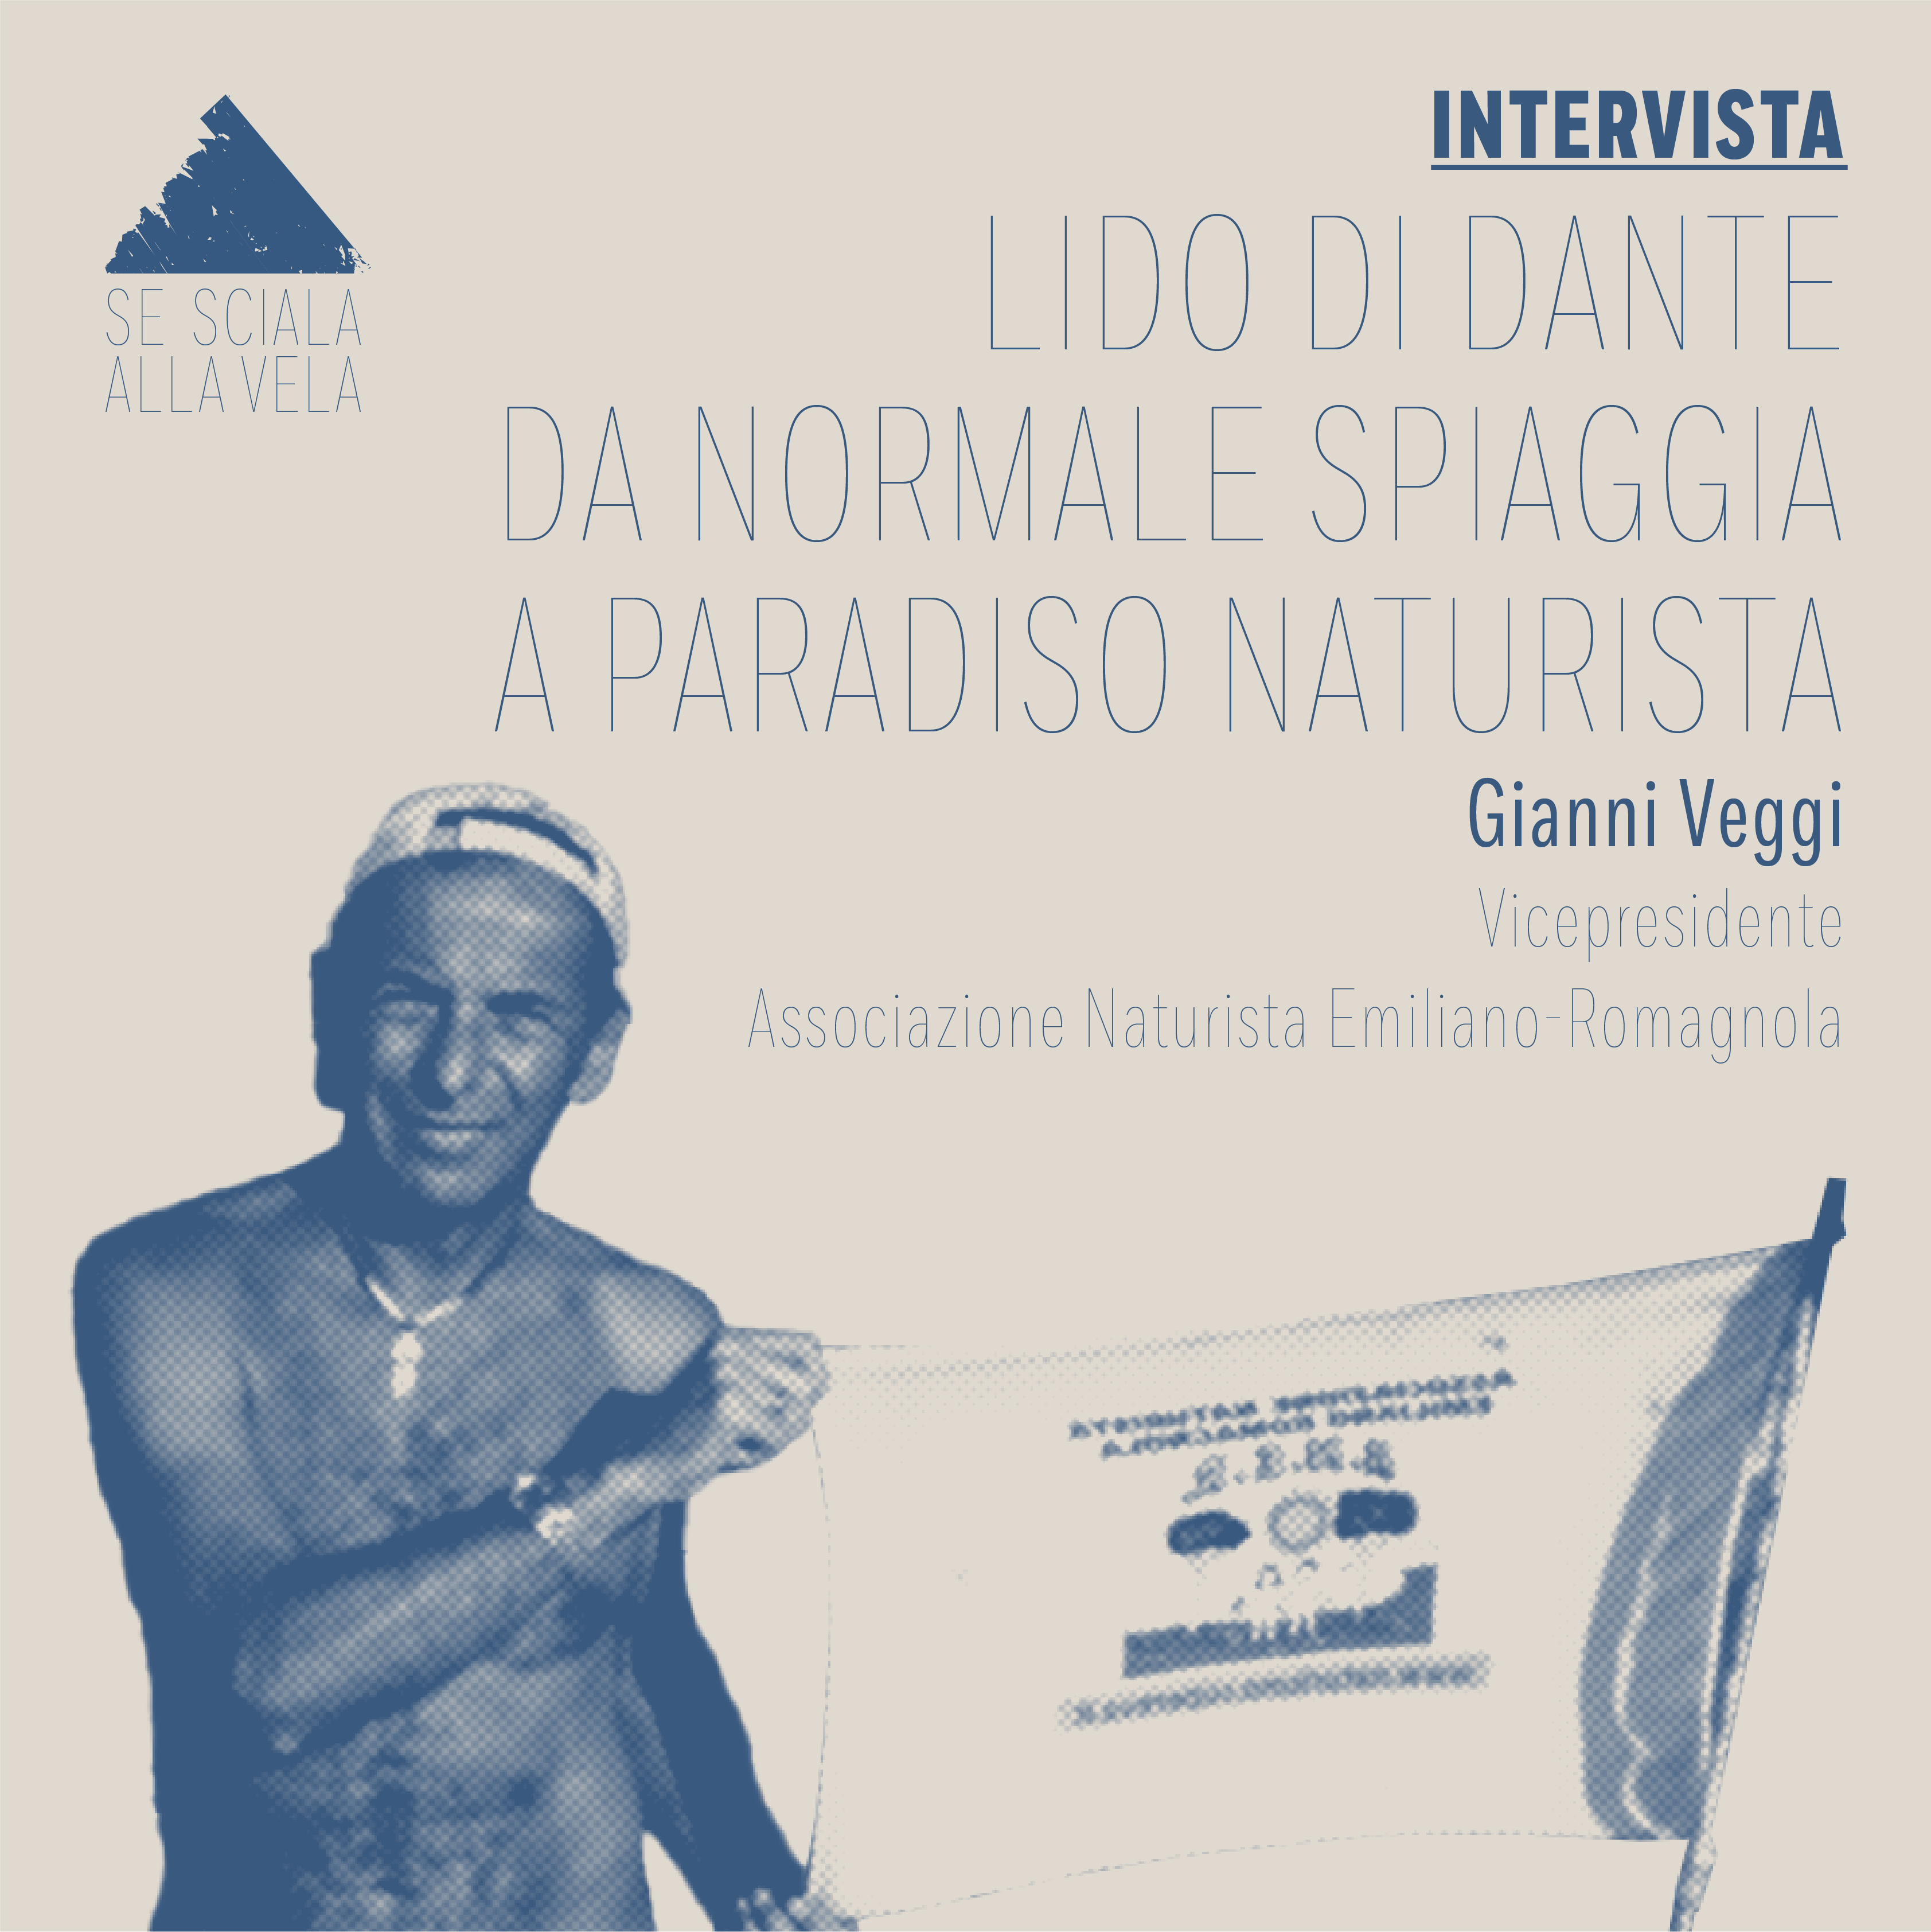 Da semplice spiaggia a paradiso naturista, Gianni Veggi racconta Lido di Dante